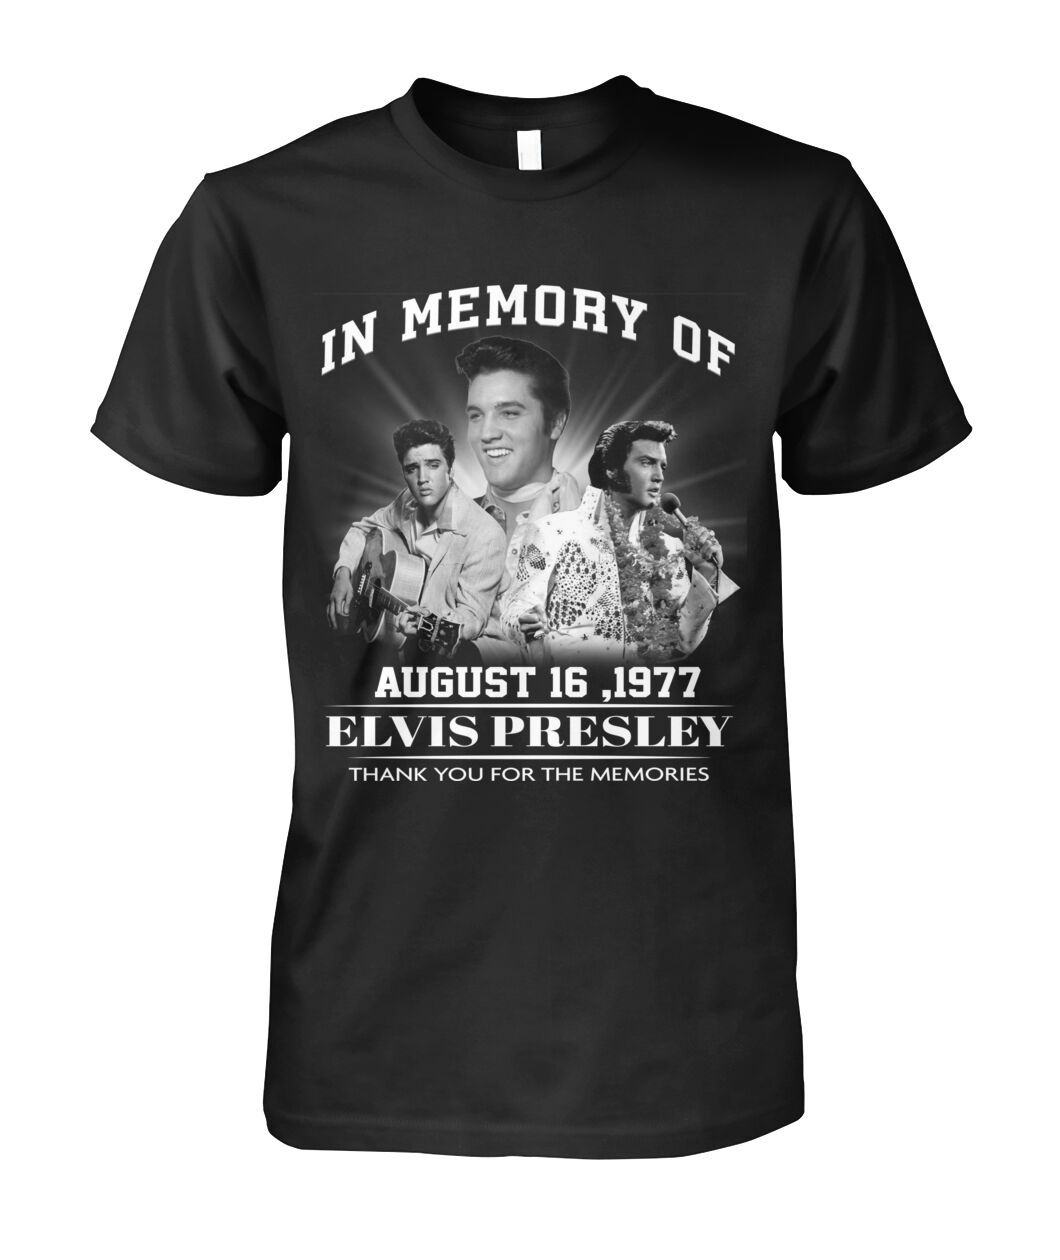 In memory of august 16 1977 elvis presley shirt